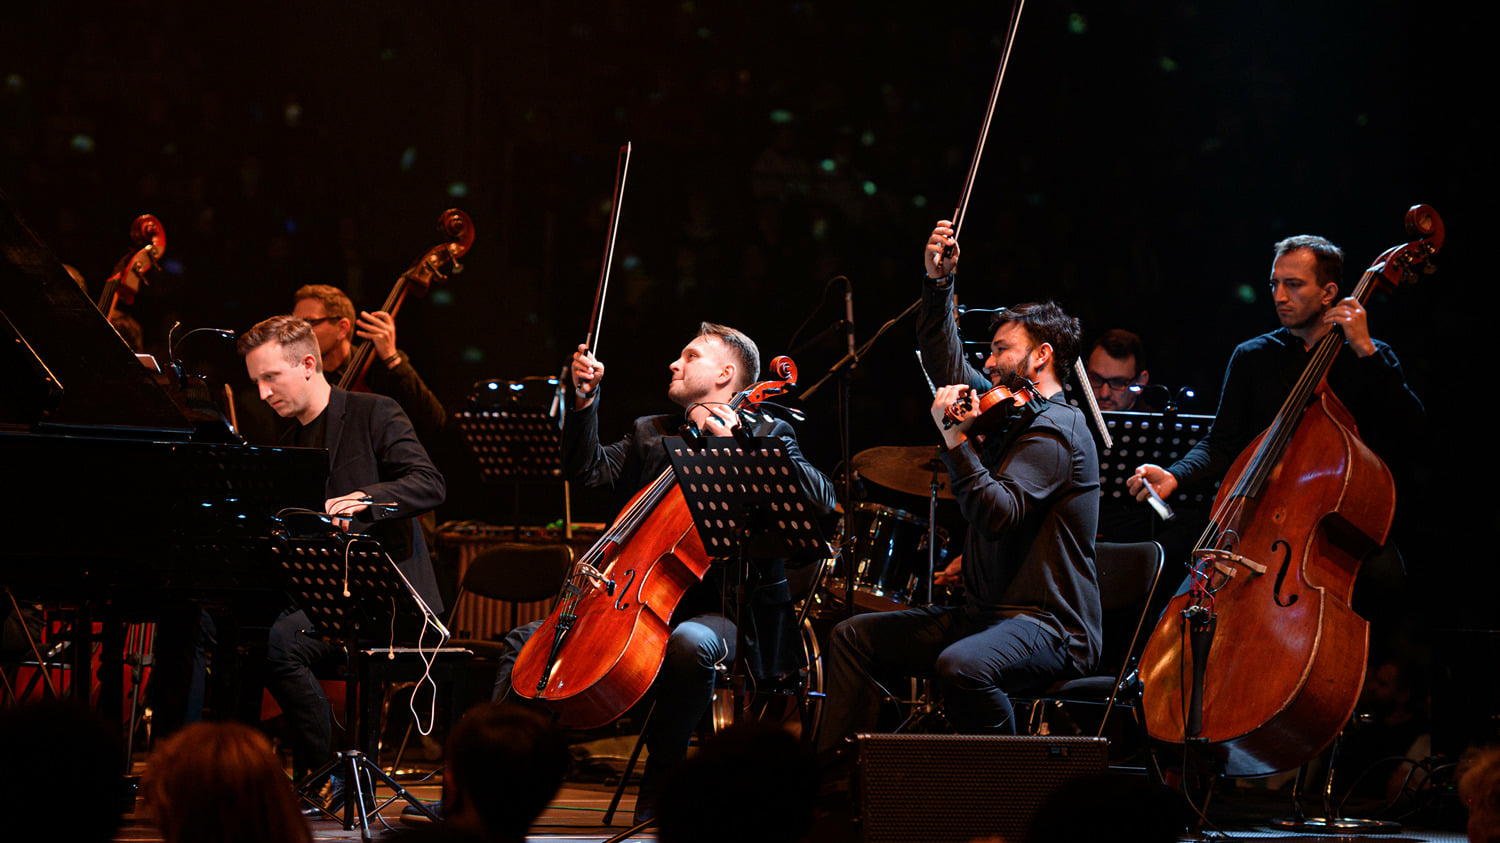 Музыка популярных фильмов прозвучит в исполнении симфонического оркестра со сцены Петербурга